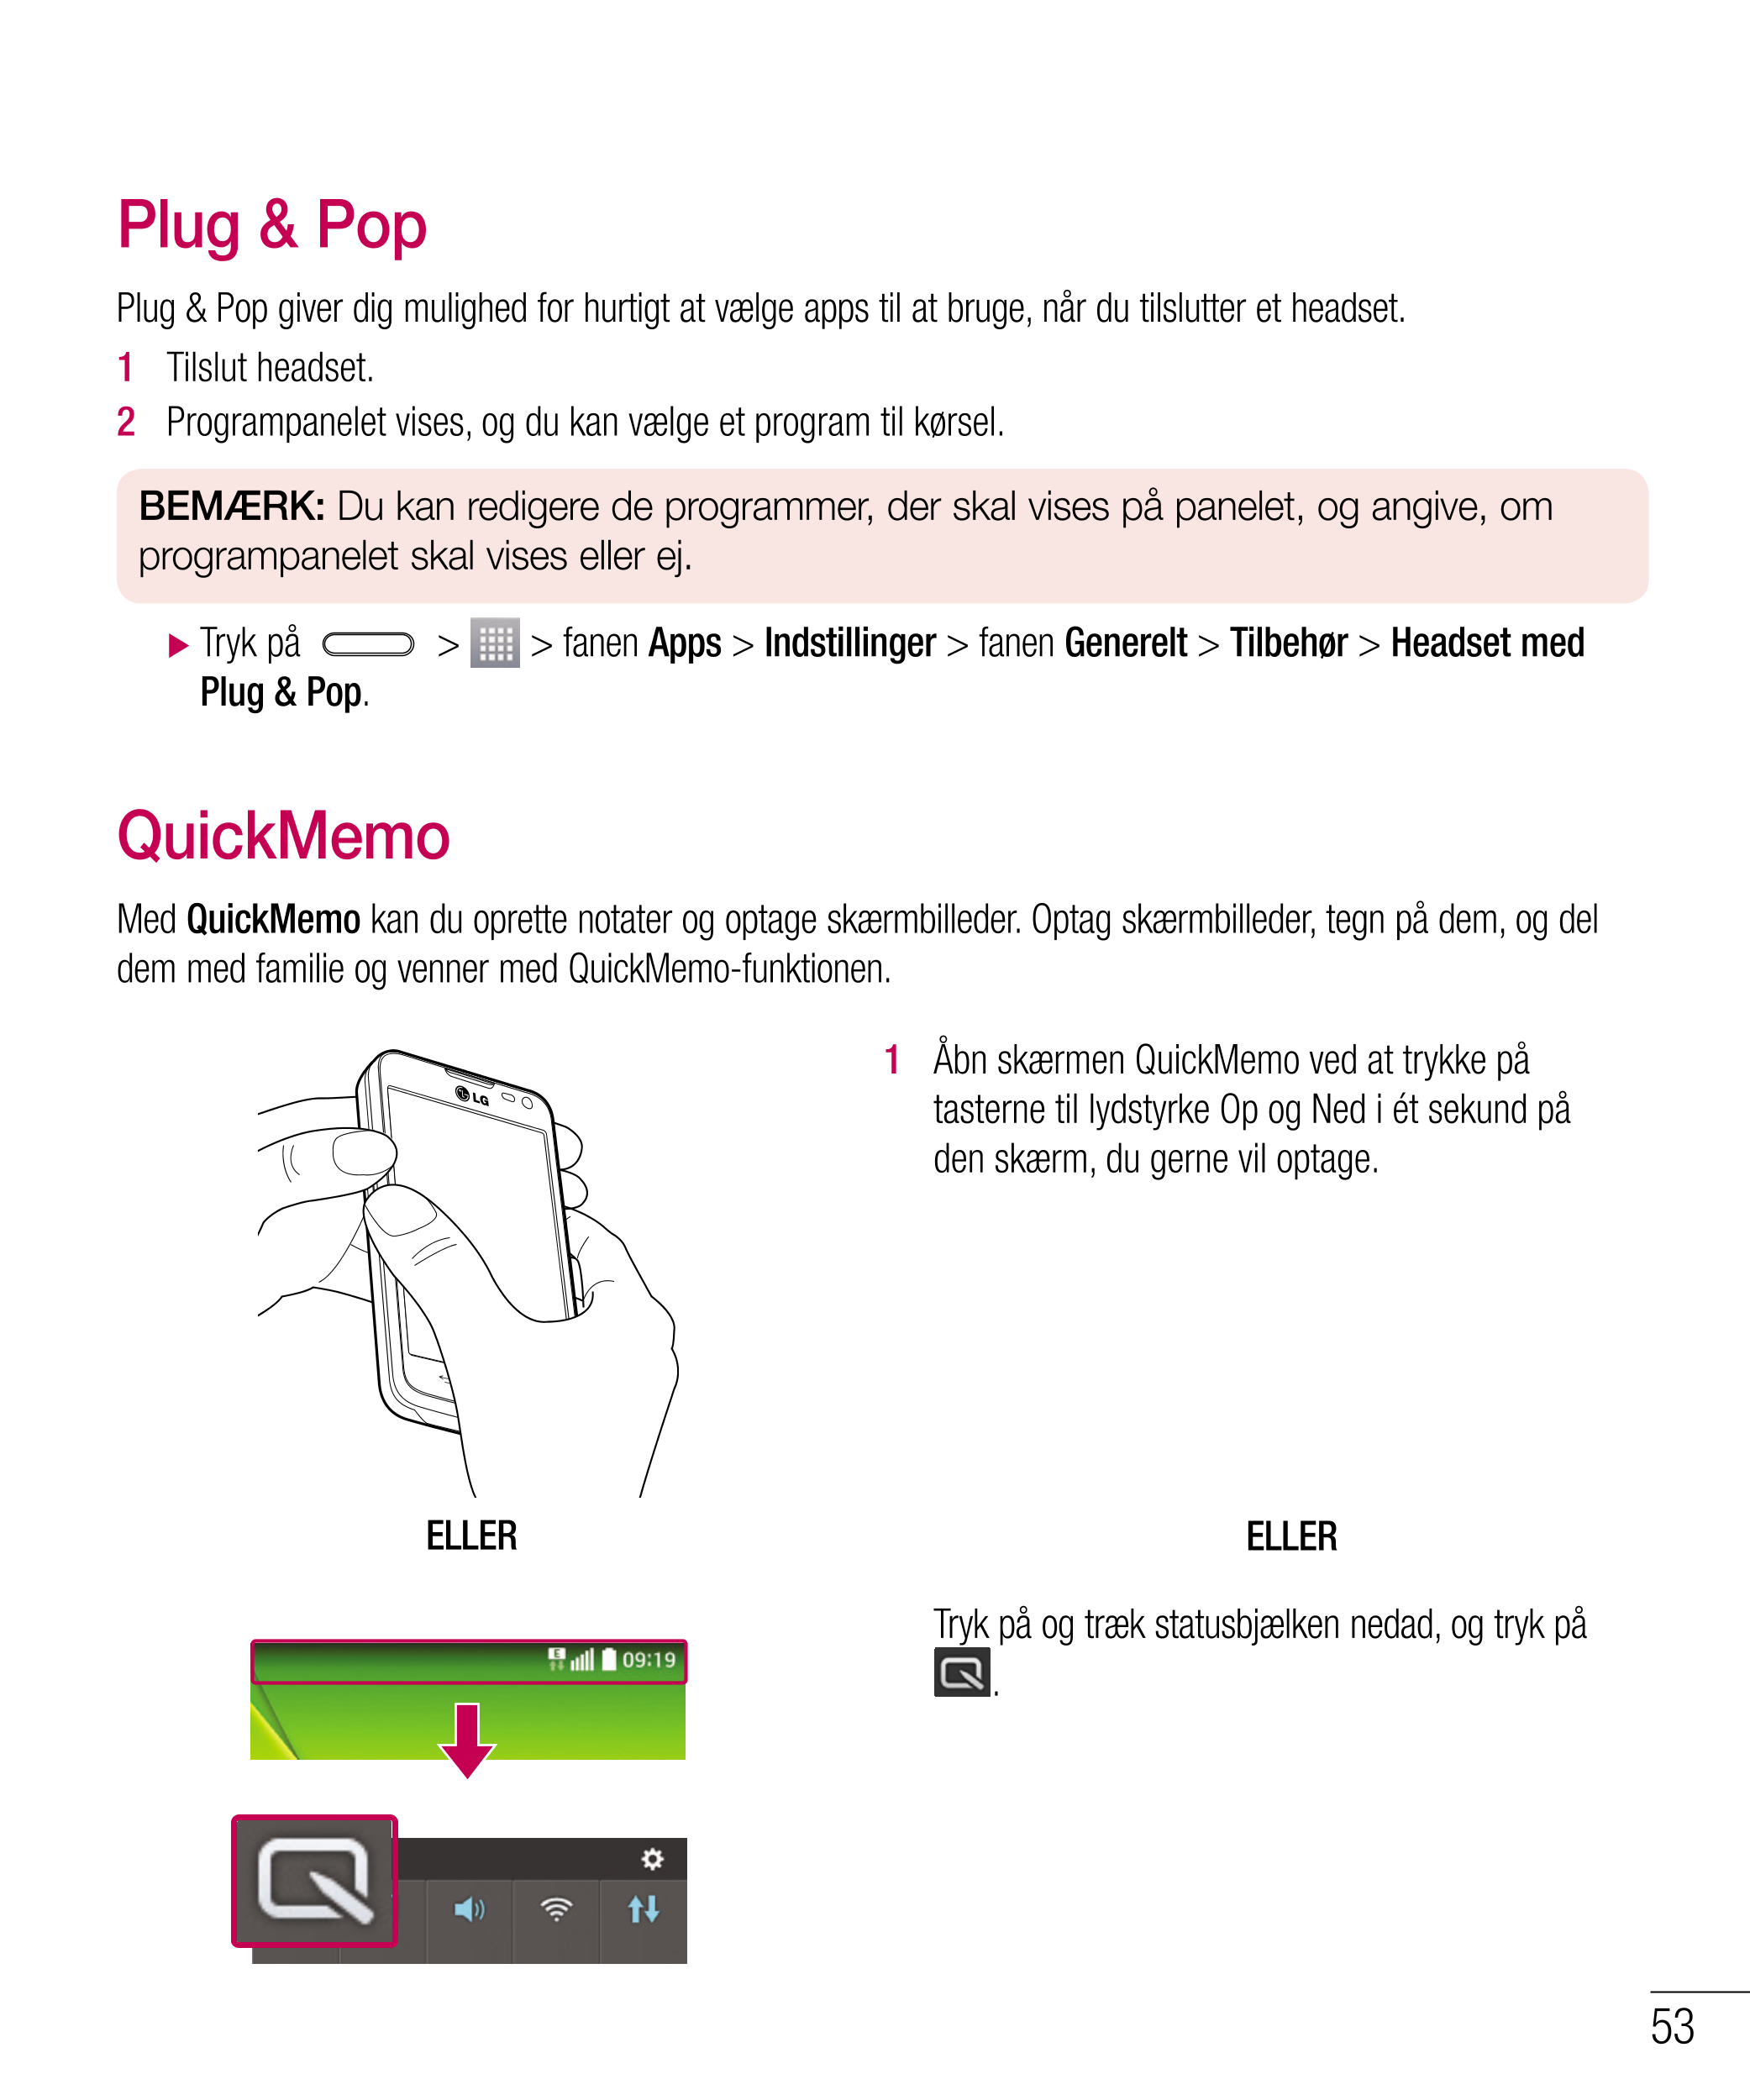 Plug & Pop
Plug & Pop giver dig mulighed for hurtigt at vælge apps til at bruge, når du tilslutter et headset.
1    Tilslut head